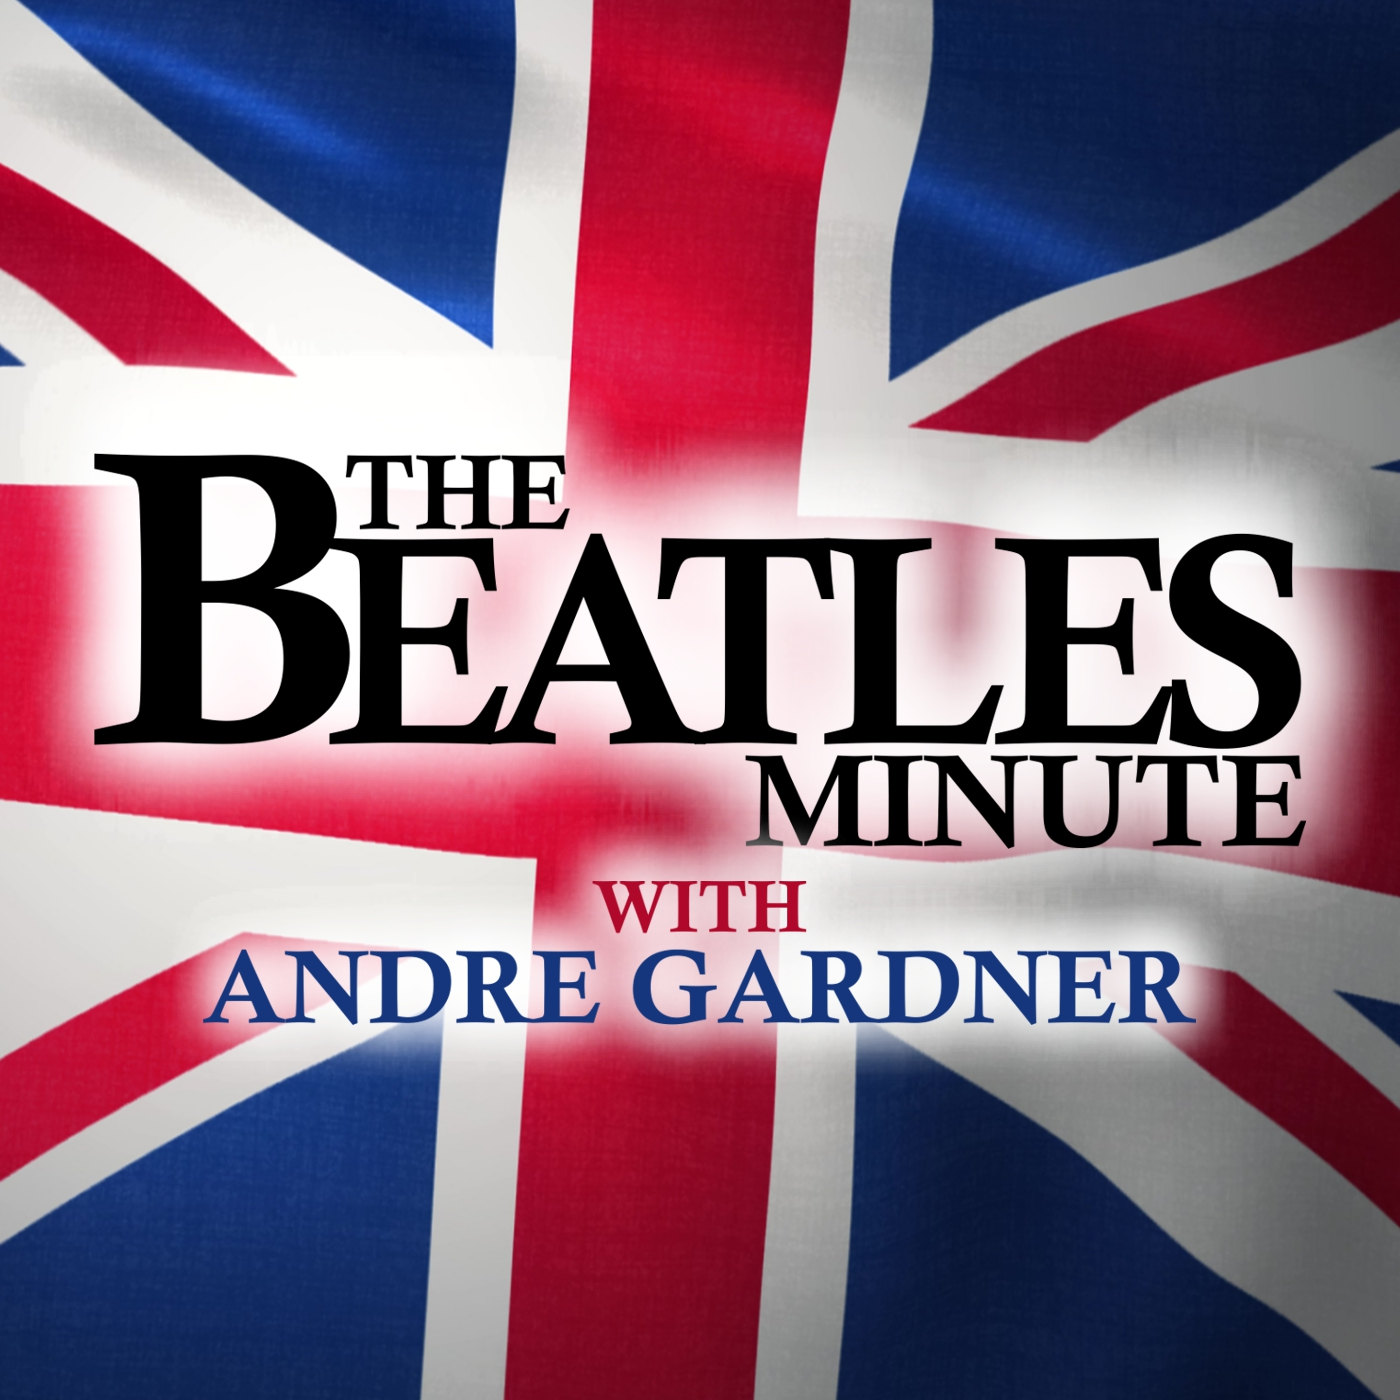 Beatles Minute - week of September 27, 2021